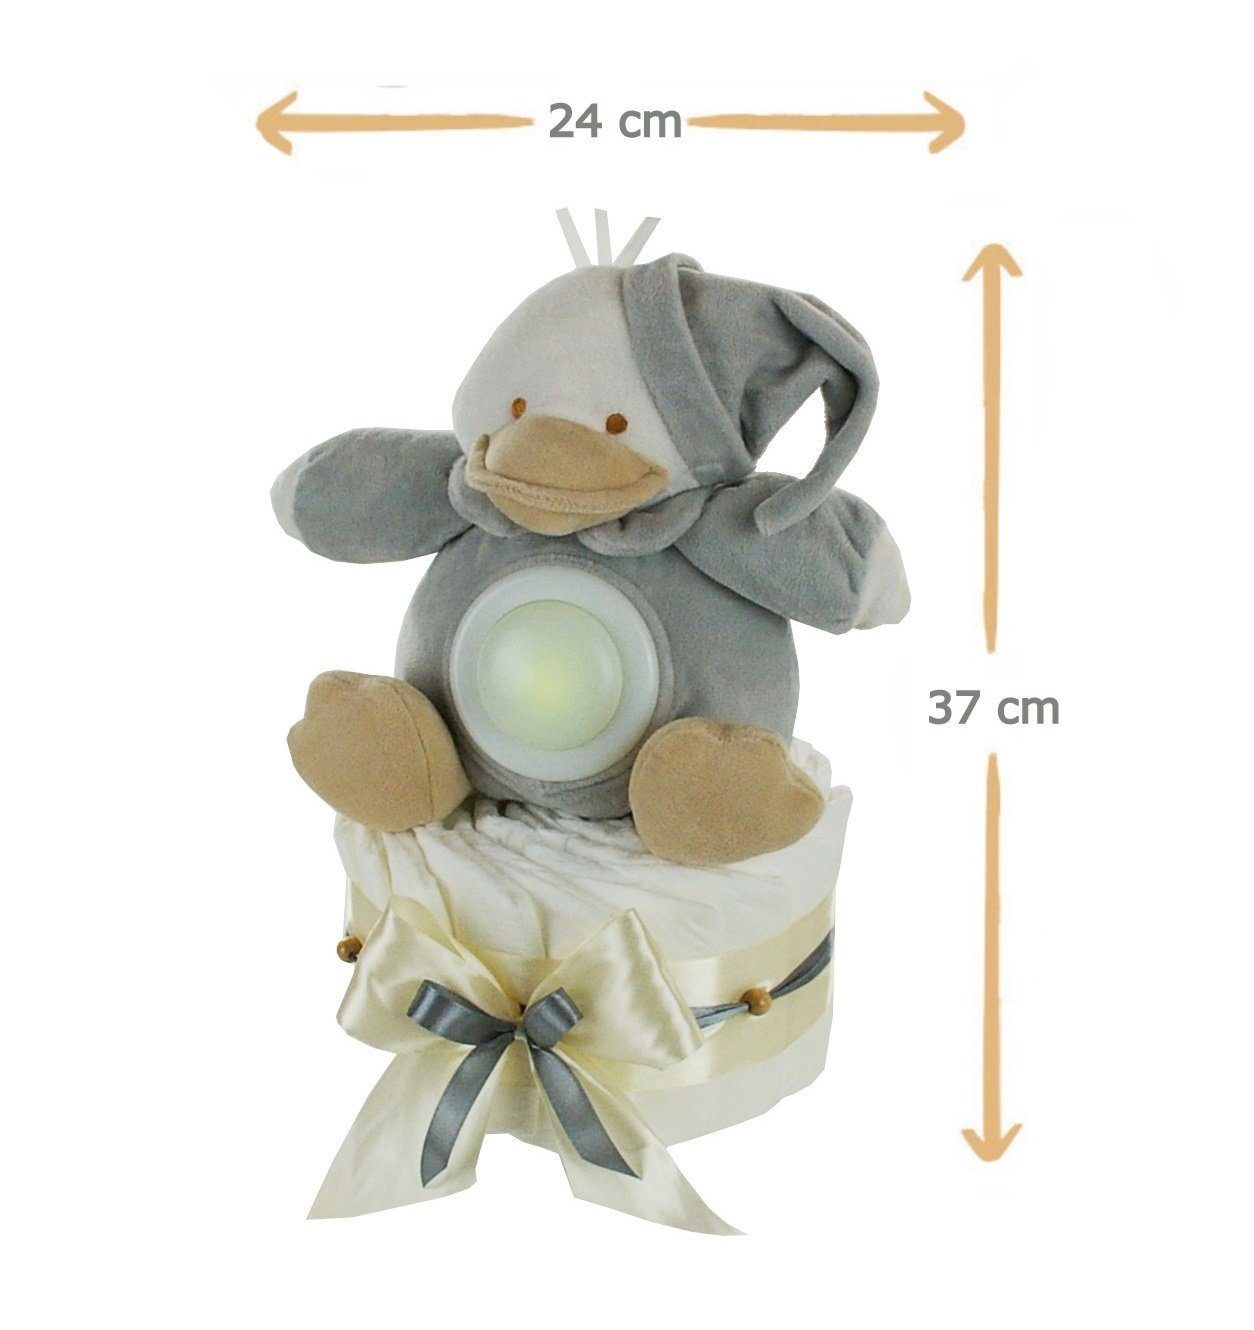 dubistda-WINDELTORTEN- Neugeborenen-Geschenkset Neutrale Windeltorte + LED-Nachtlicht 35cm Grußkarte Ente Kuscheltier